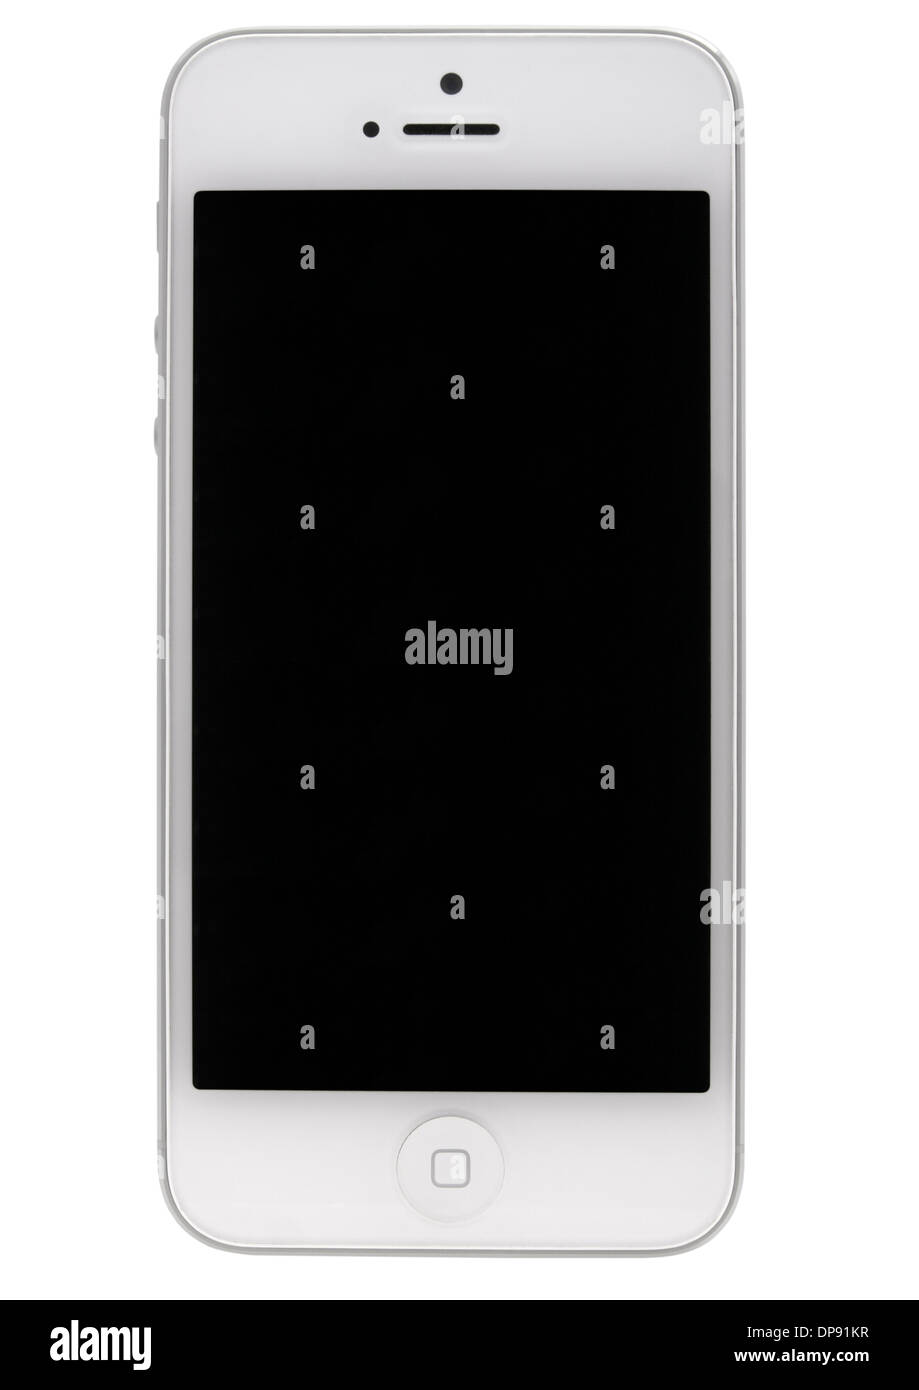 L'iPhone 4 sur fond blanc Banque D'Images